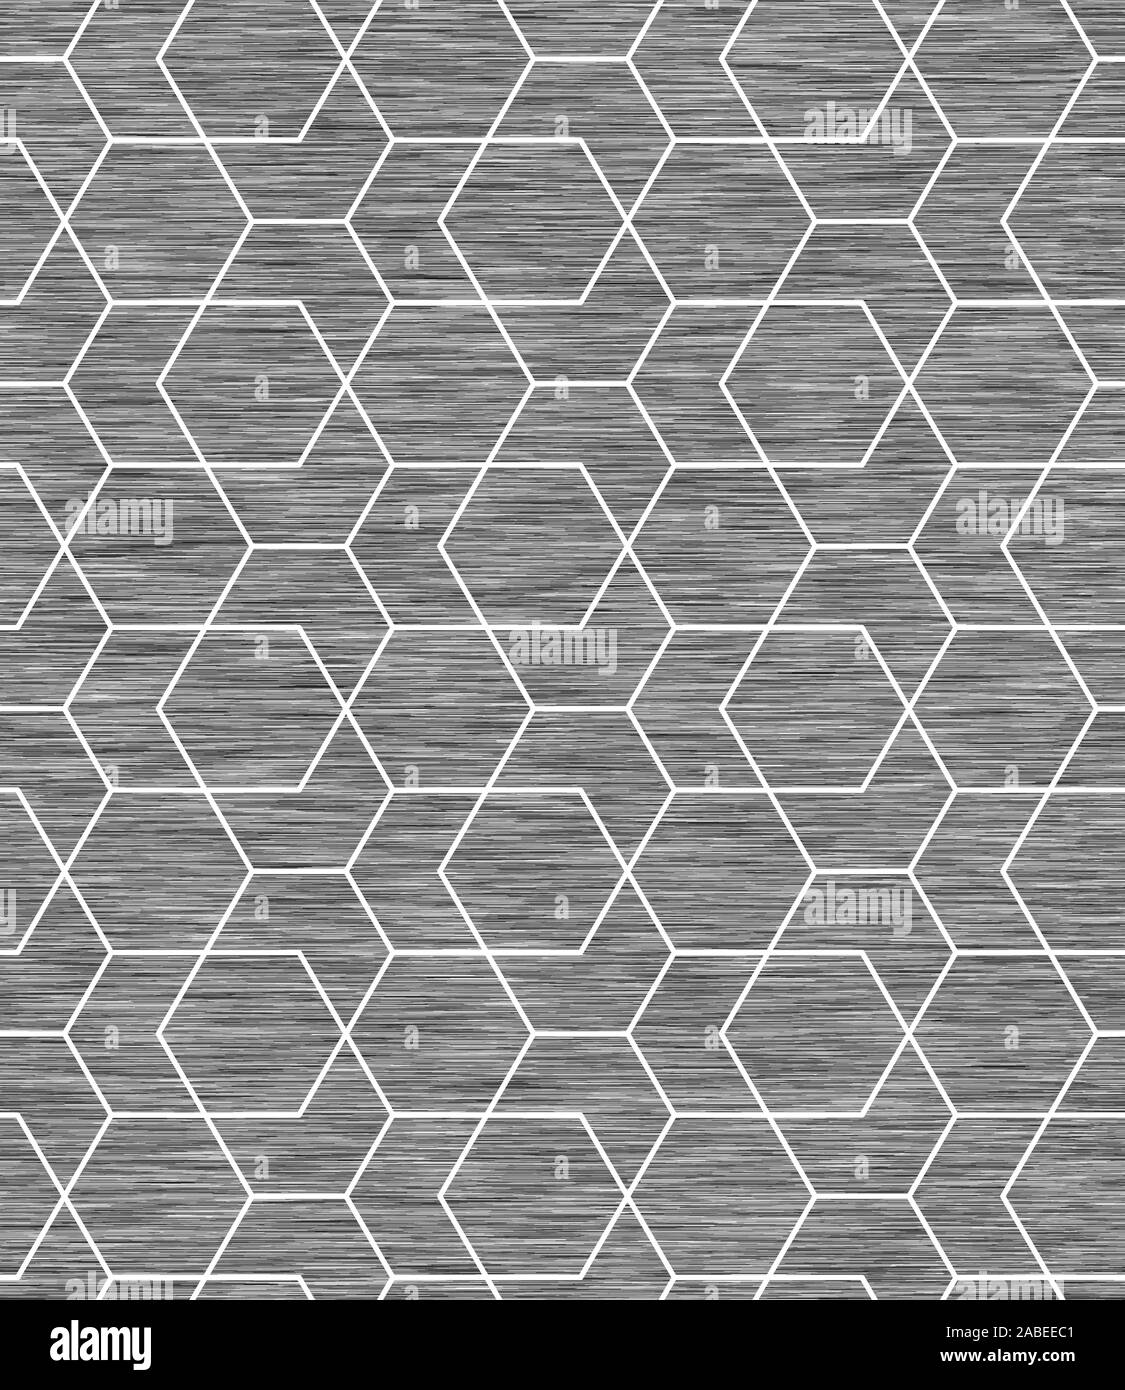 Geometrica di Linea Grigio marna Heather Pattern senza giunture Illustrazione Vettoriale